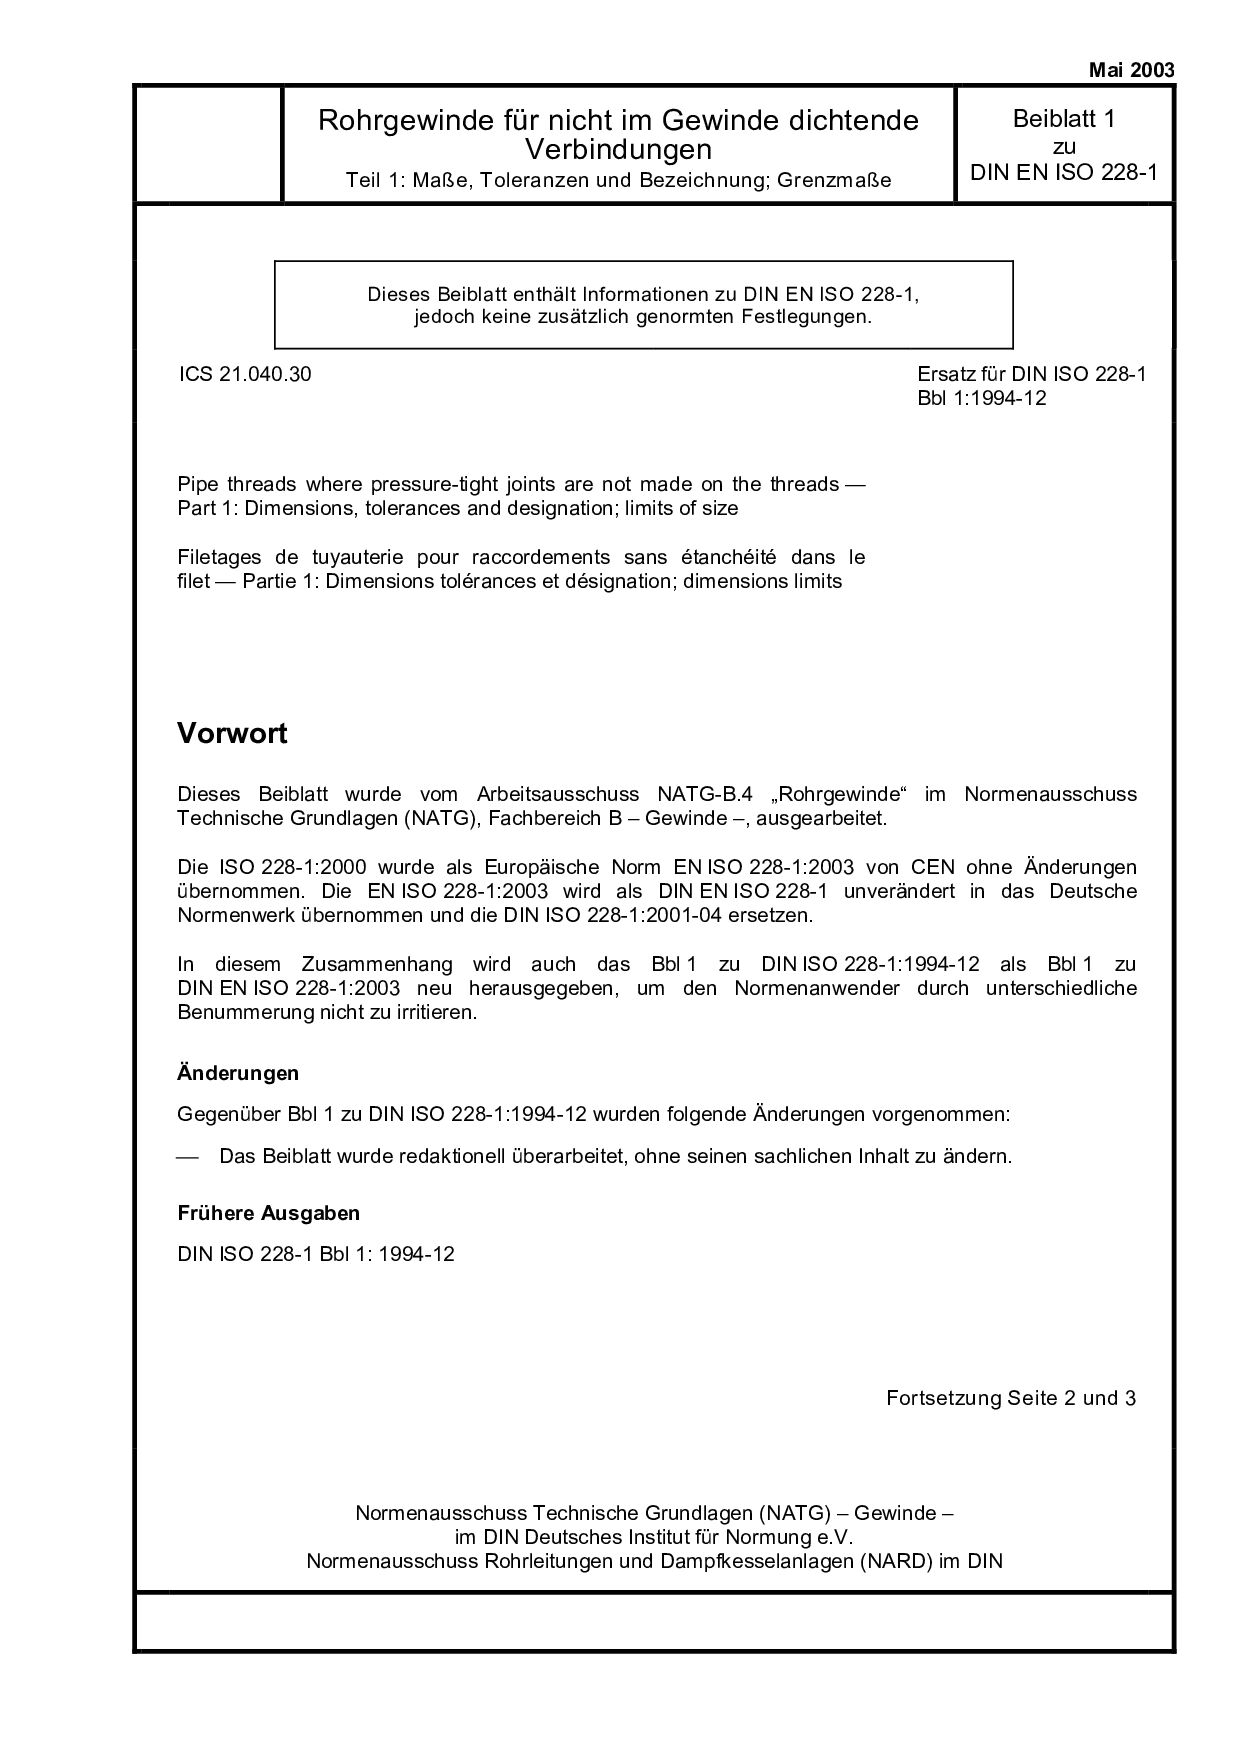 DIN EN ISO 228-1 Beiblatt 1:2003